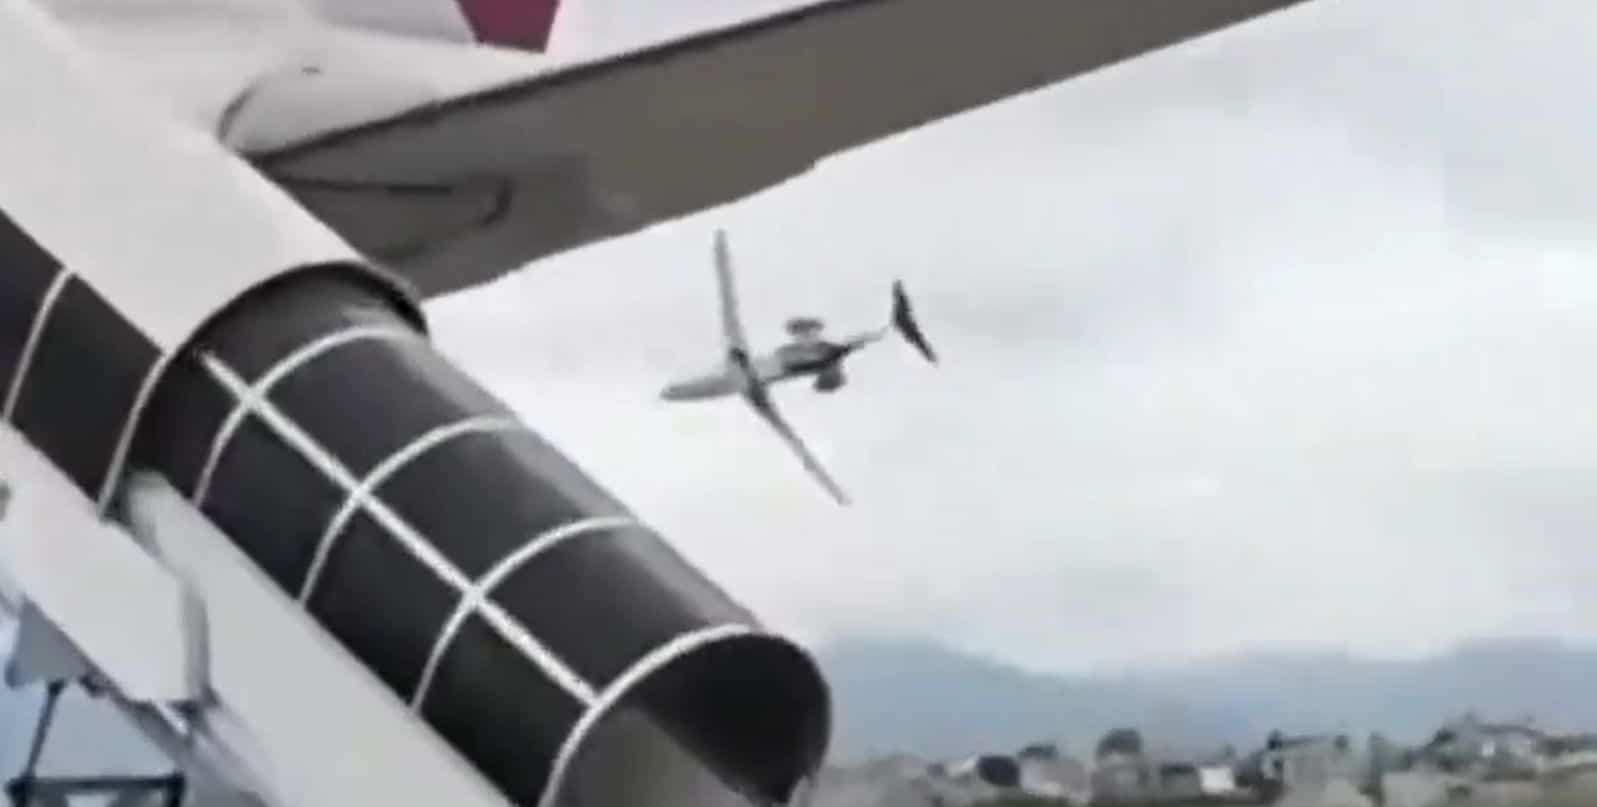 เครื่องบินตกเนปาล หลังเทคออฟ เป็นเหตุให้มีผู้เสียชีวิต 18 ศพ นักบินรอดคนเดยว